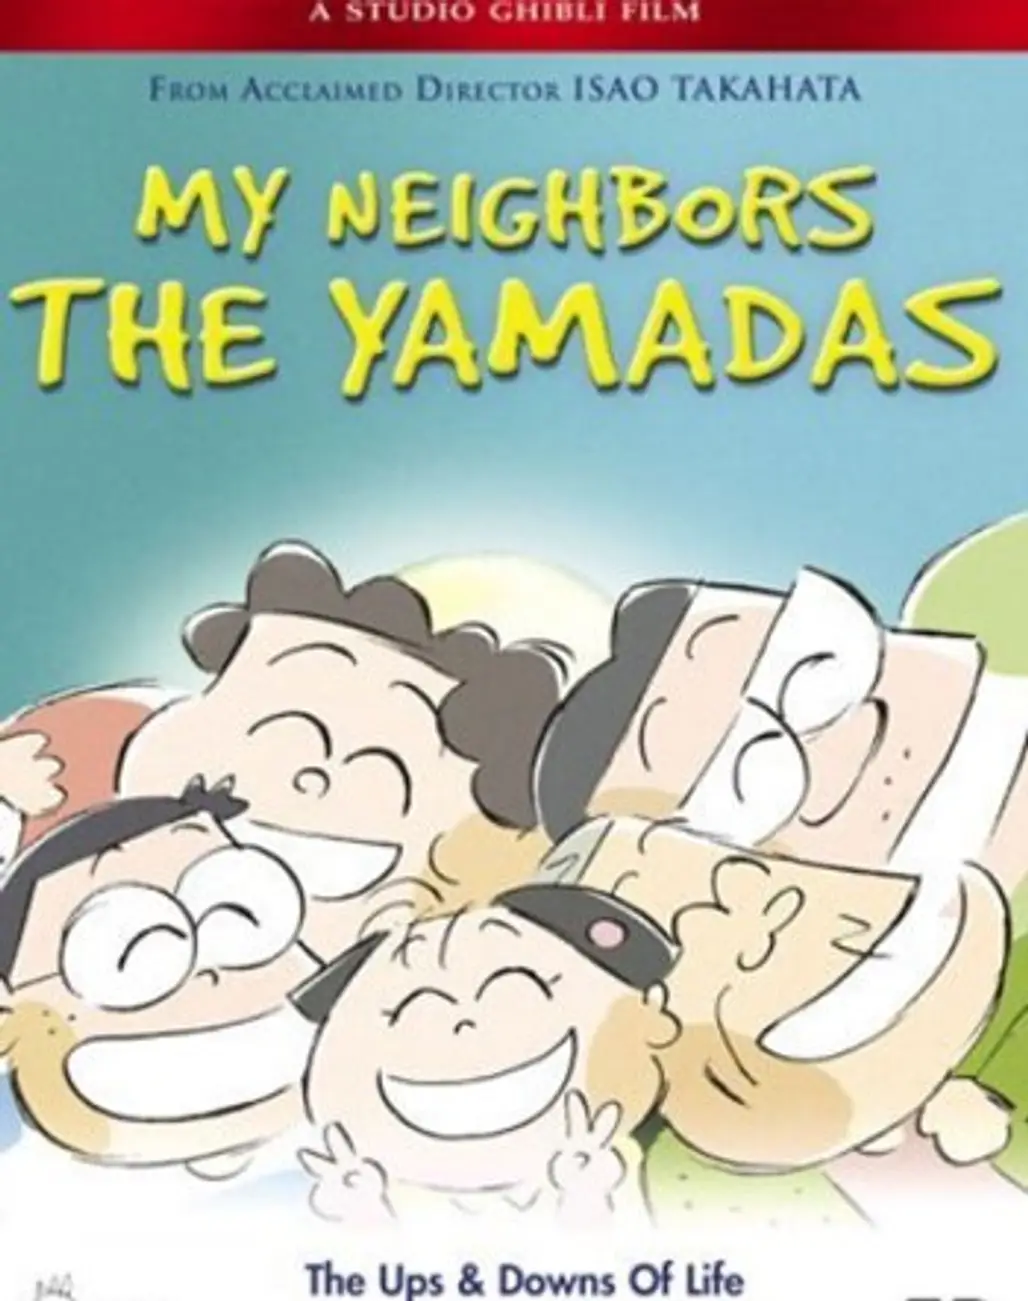 My Neighbor the Yamadas